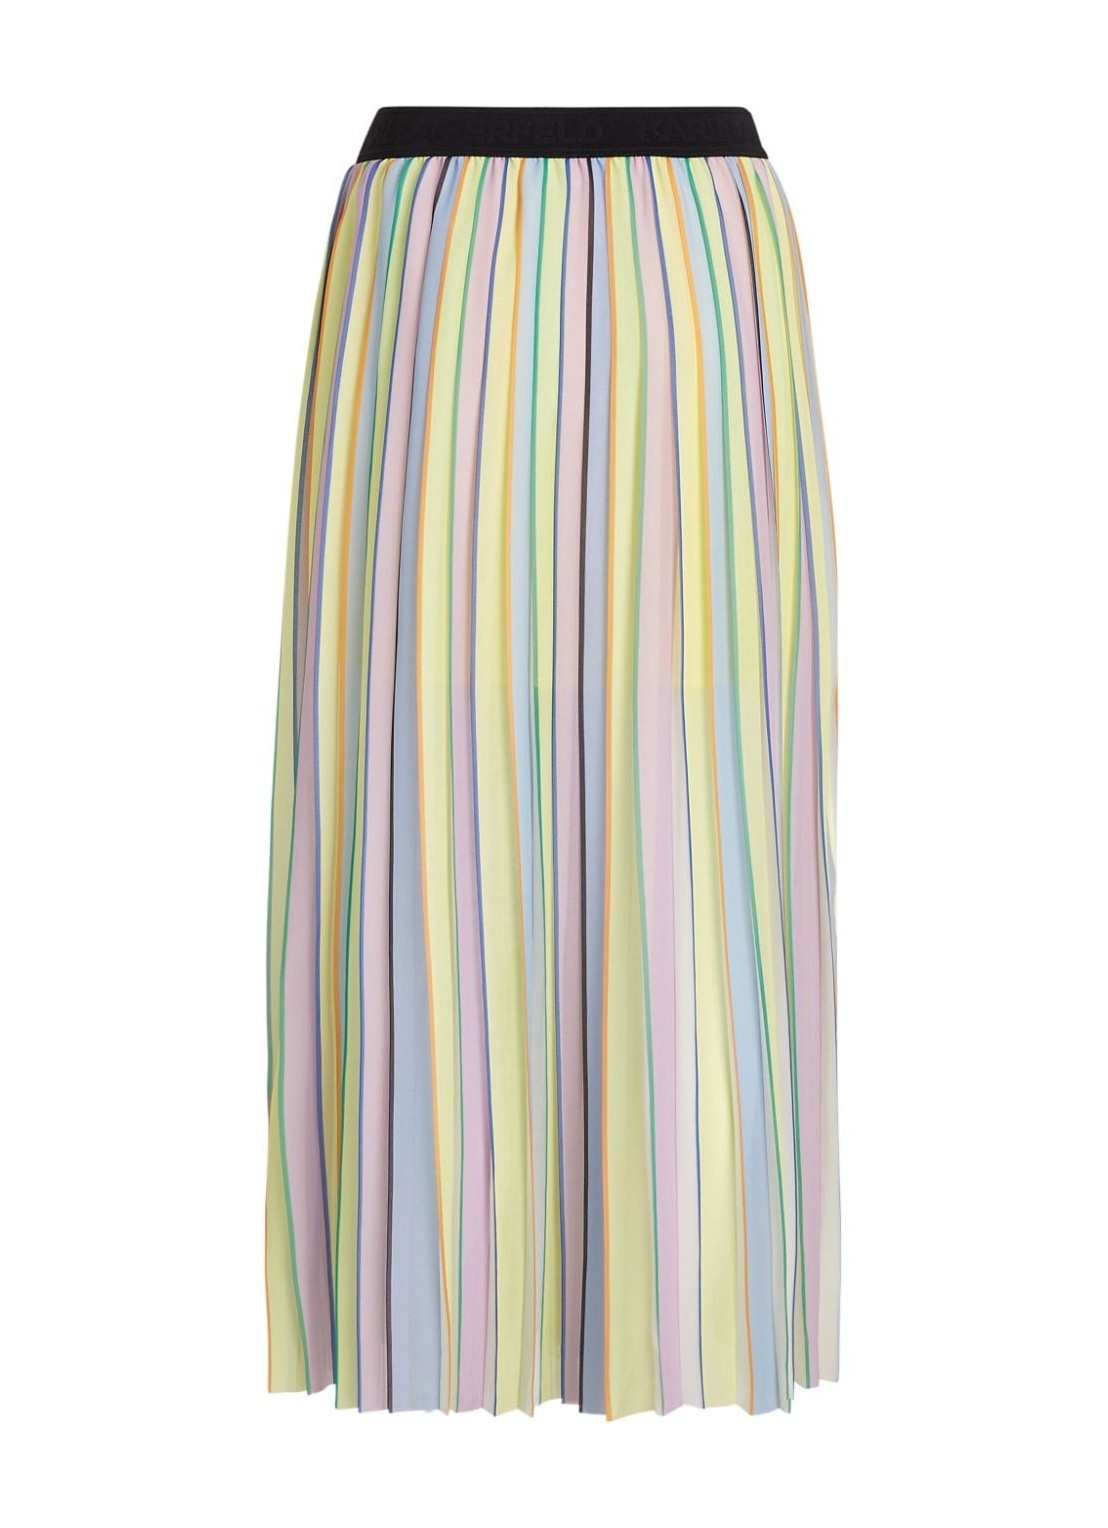 Falda karl lagerfeld skirt womanstripe pleated skirt - 241w1202 r54 talla 38
 